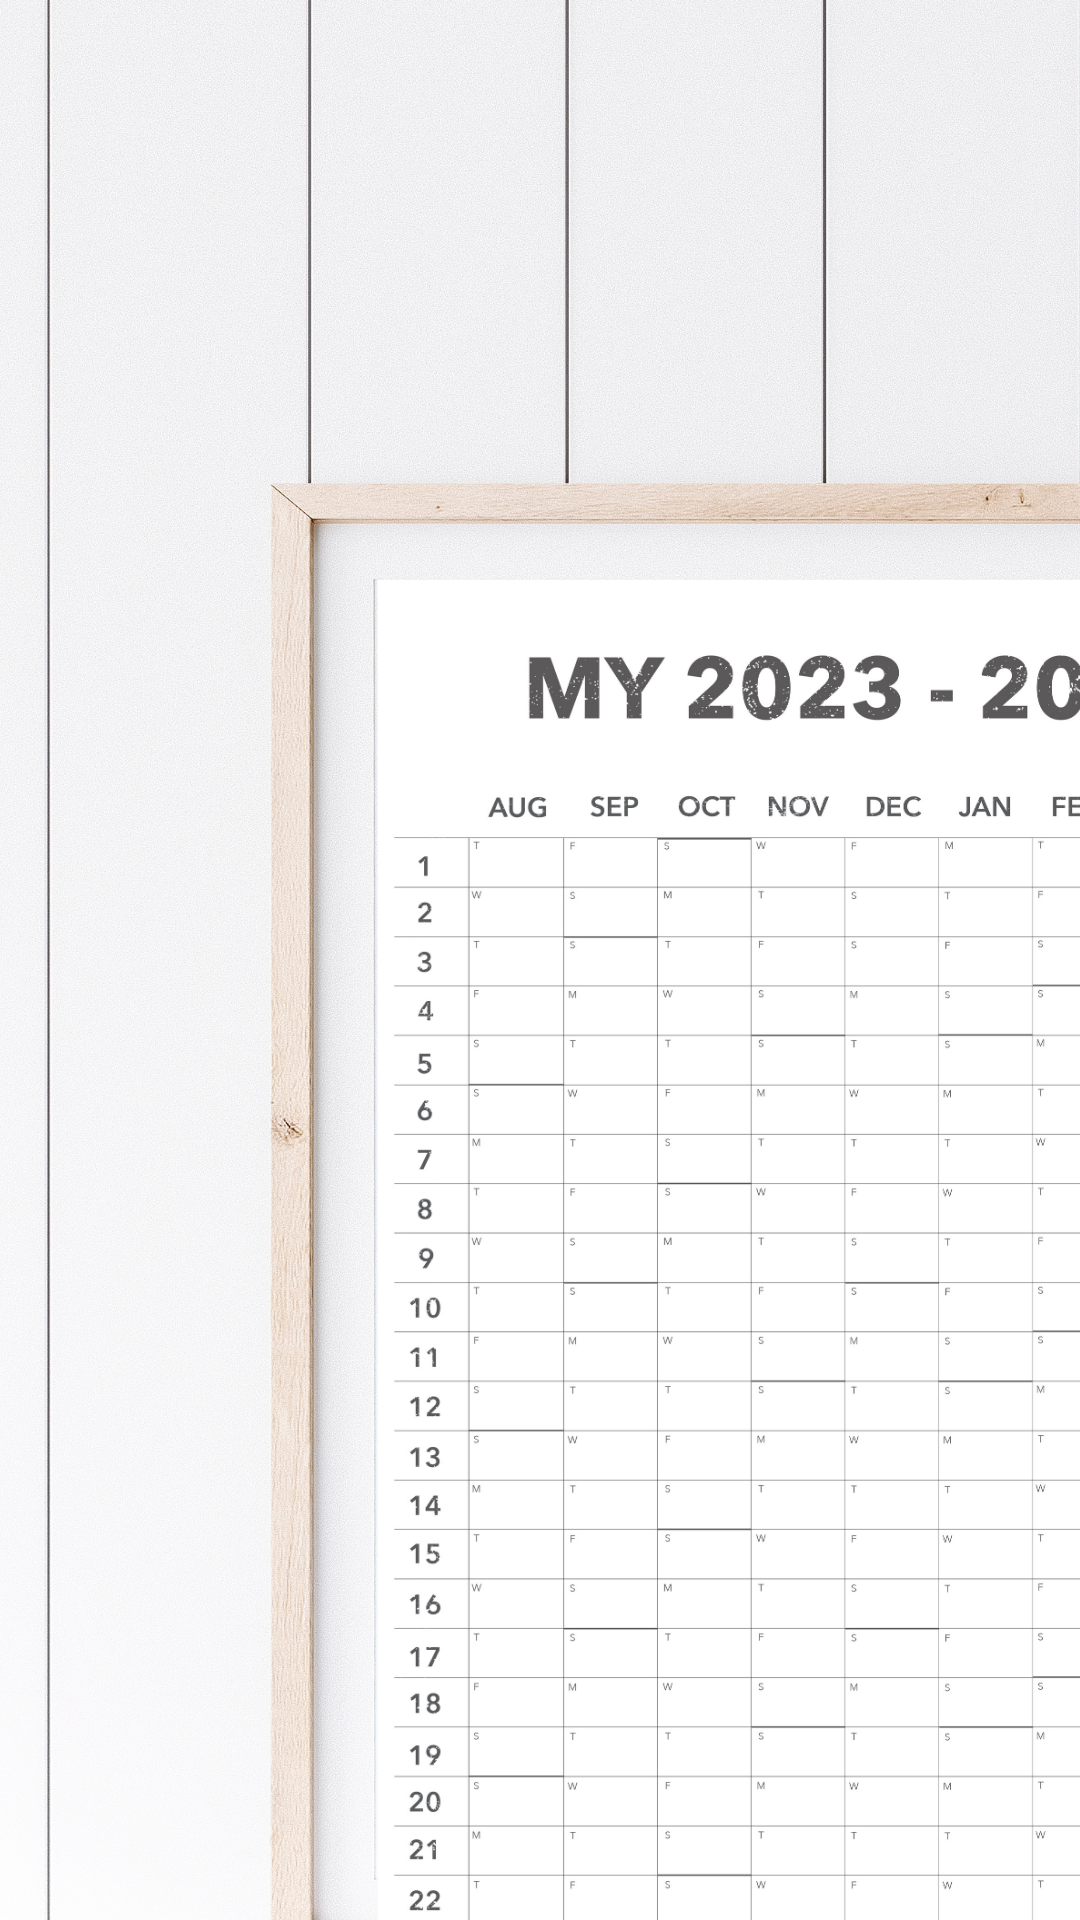 My 2023 - 2024 Plan Wall Calendar - DIGITAL COPY